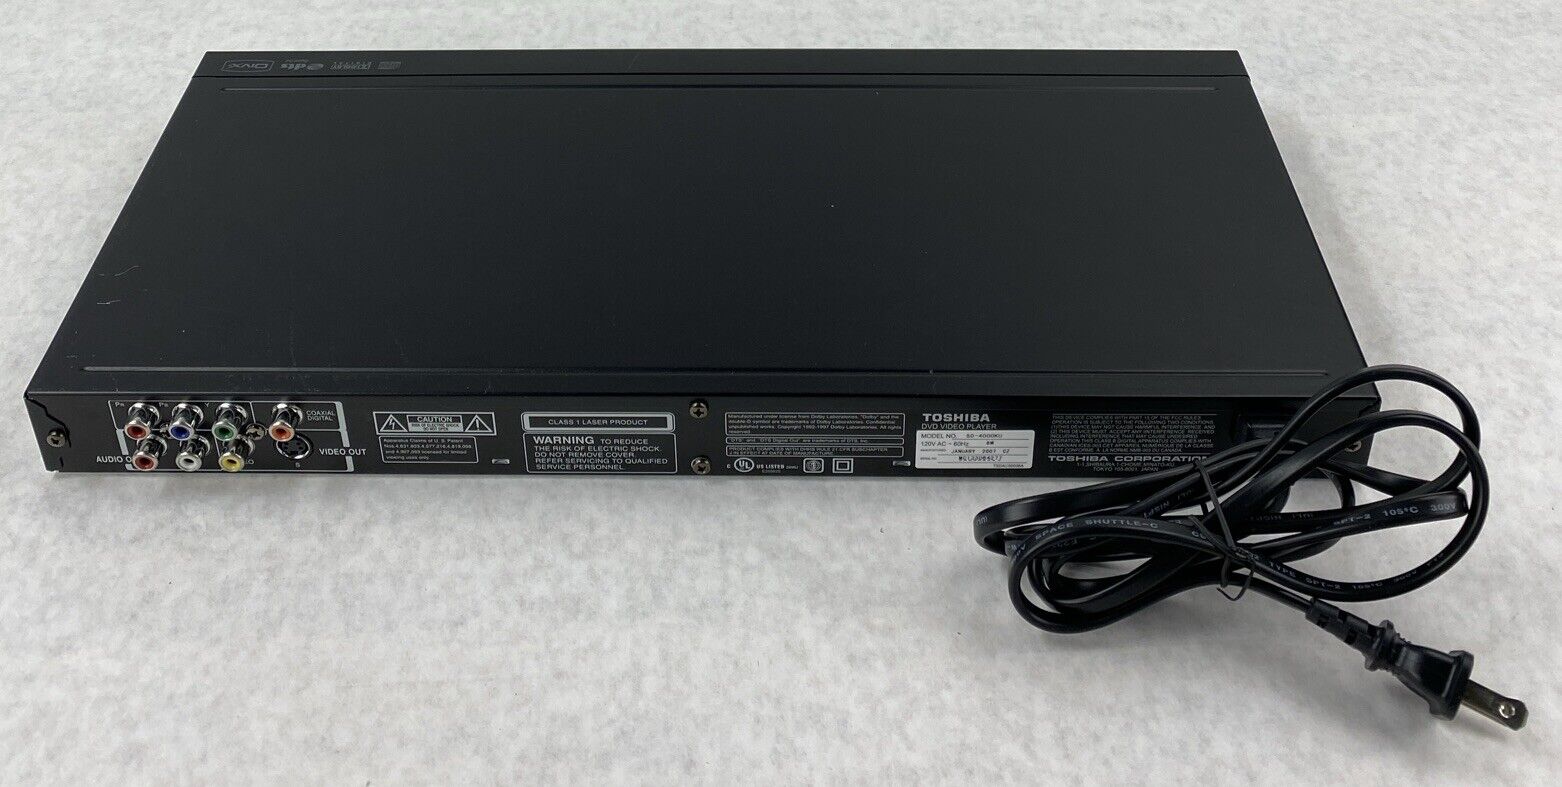 Toshiba SD-4000KU DVD Player Digital Cinema Progressive Black + REMOTE